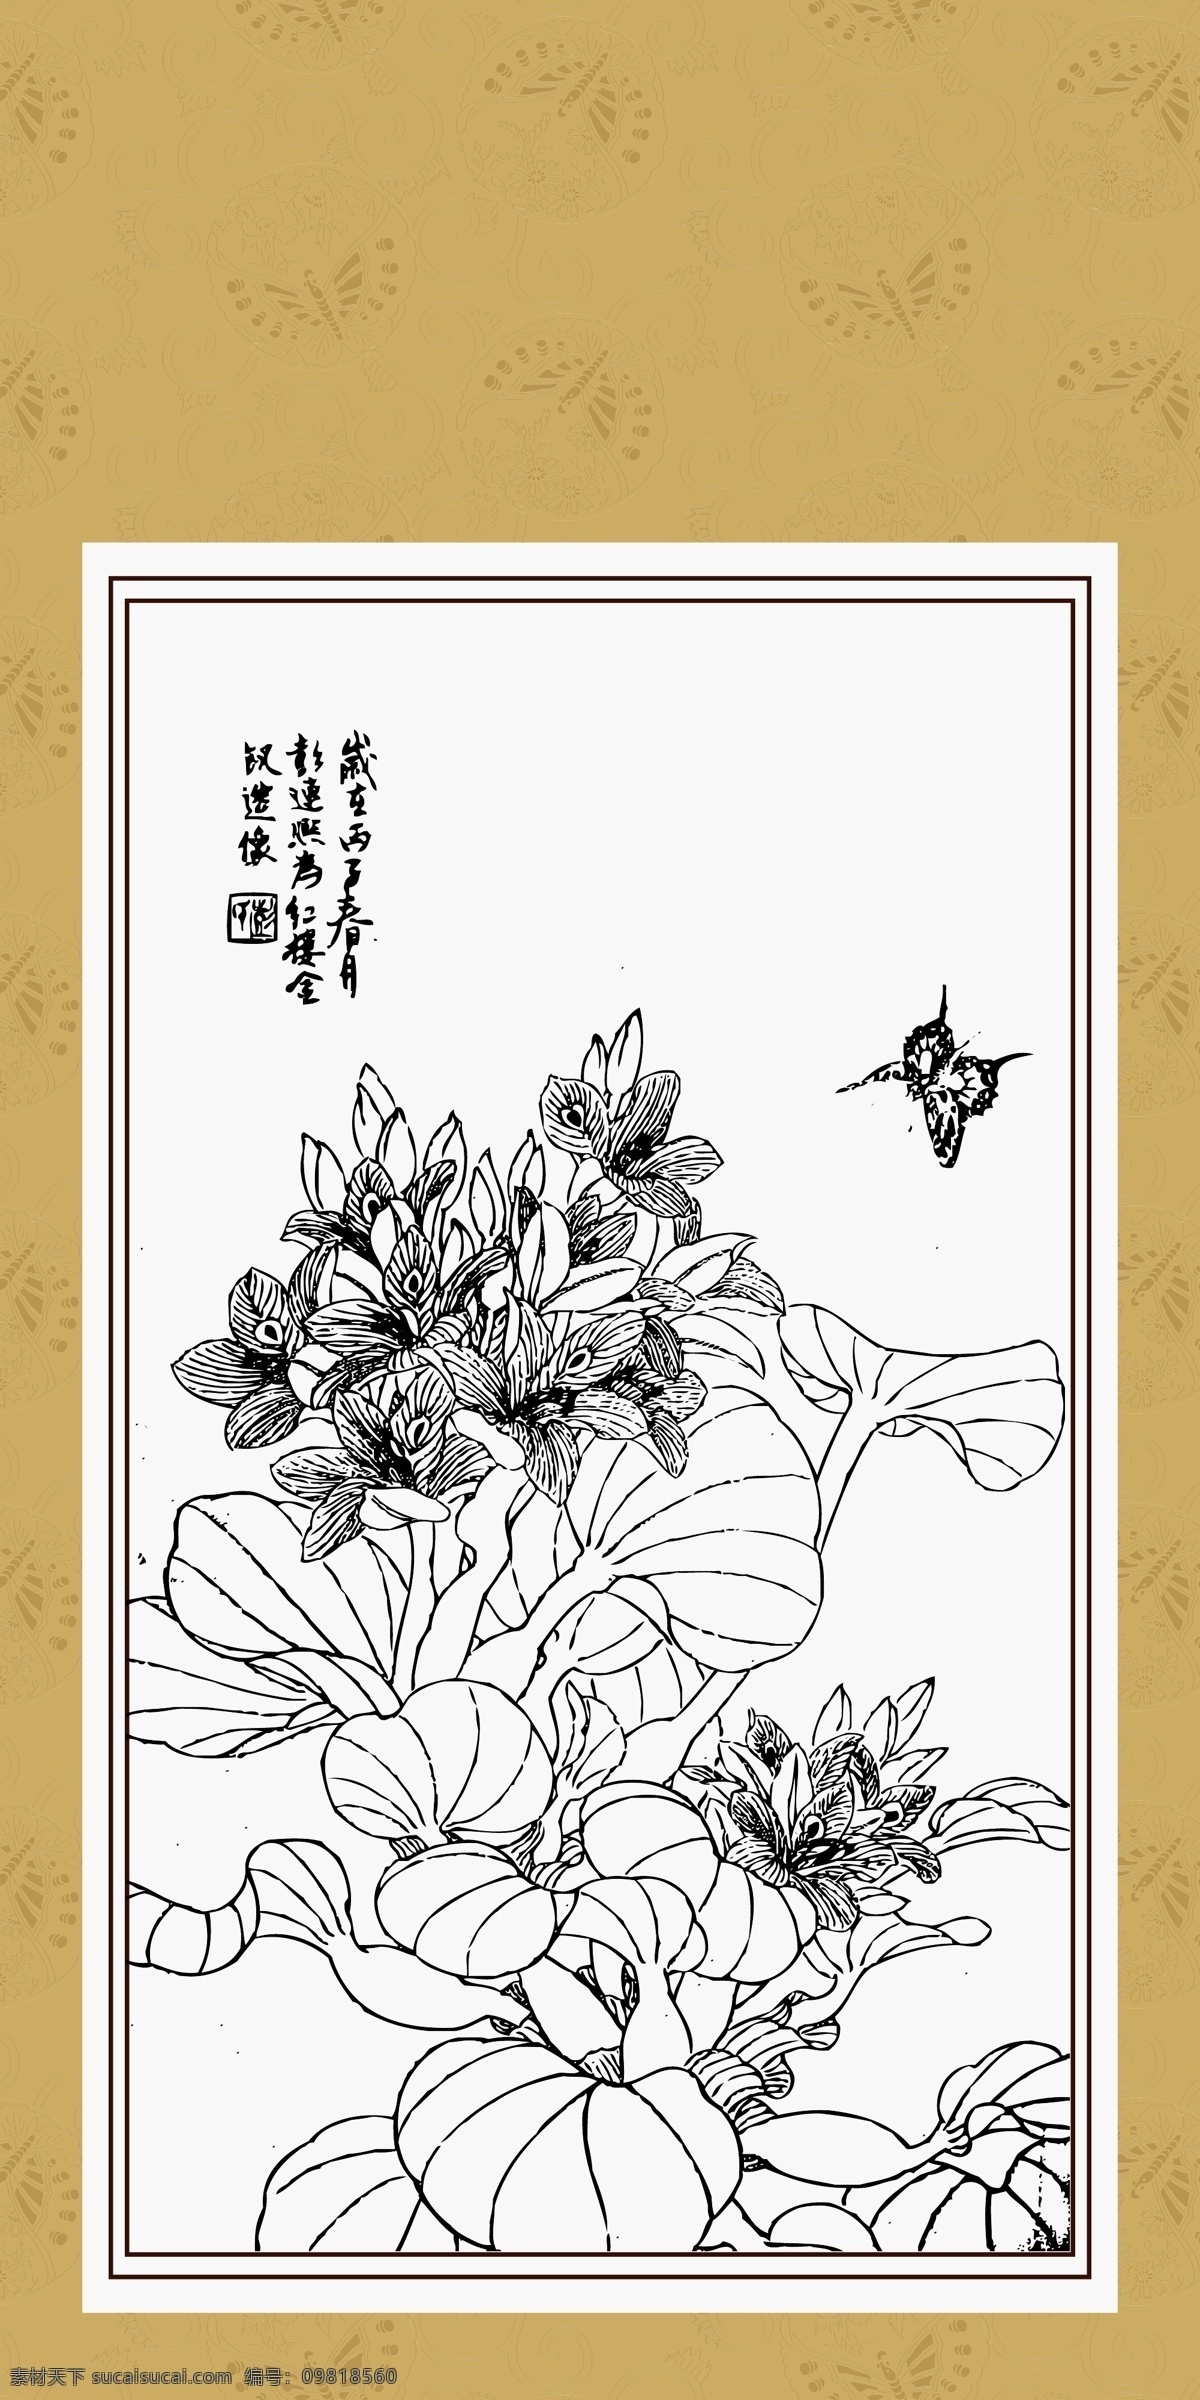 蝶恋花 国画 线描 白描 绘画 花卉 蝴蝶 传统文化 文化艺术 矢量